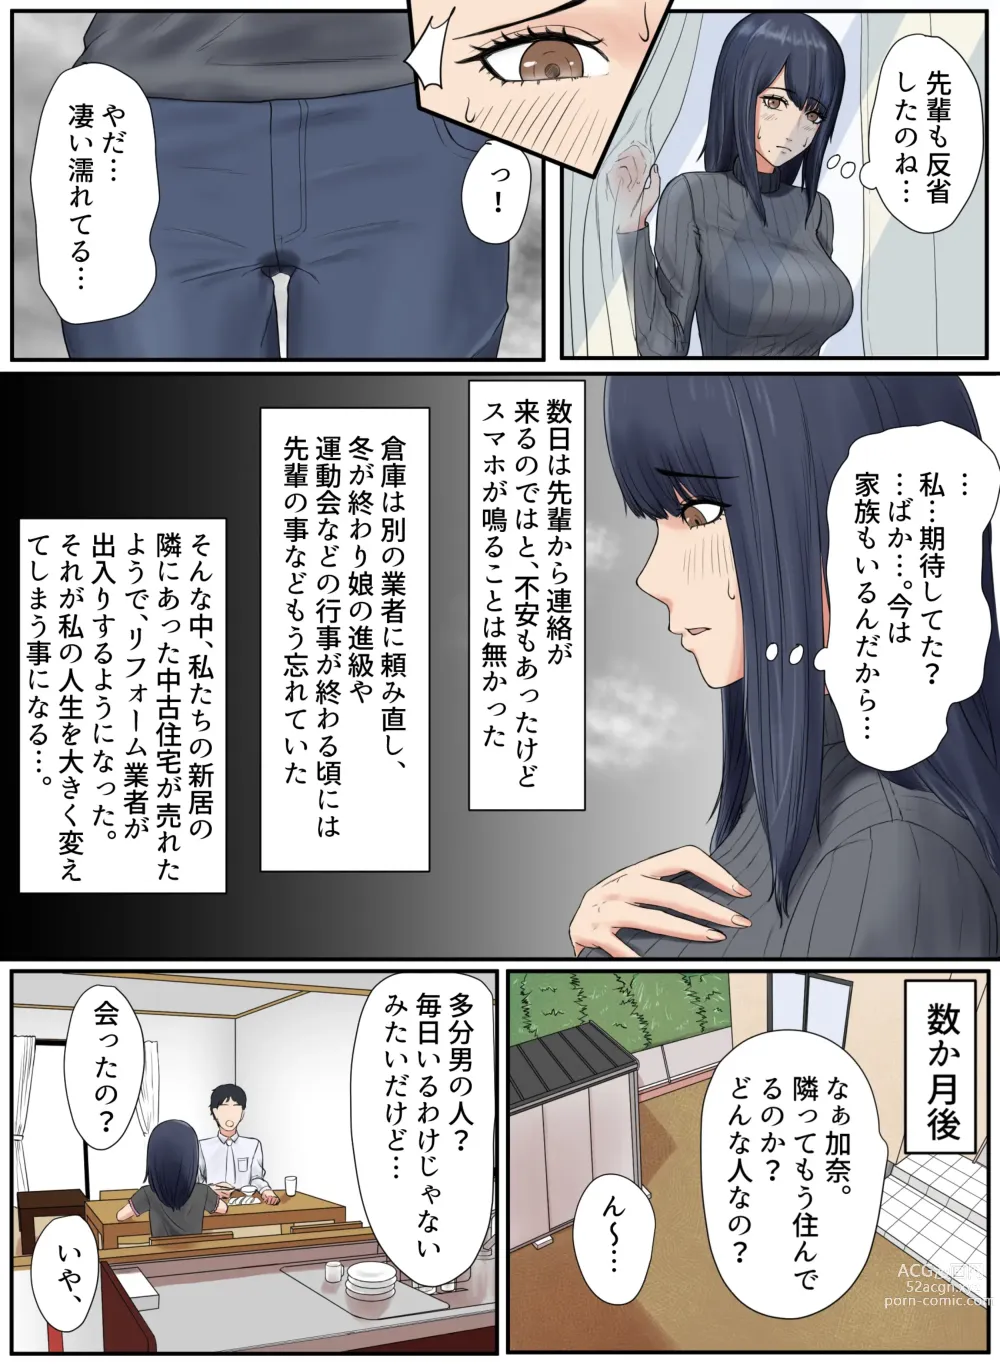 Page 13 of doujinshi Tonari no Ie no Warui SENPAI